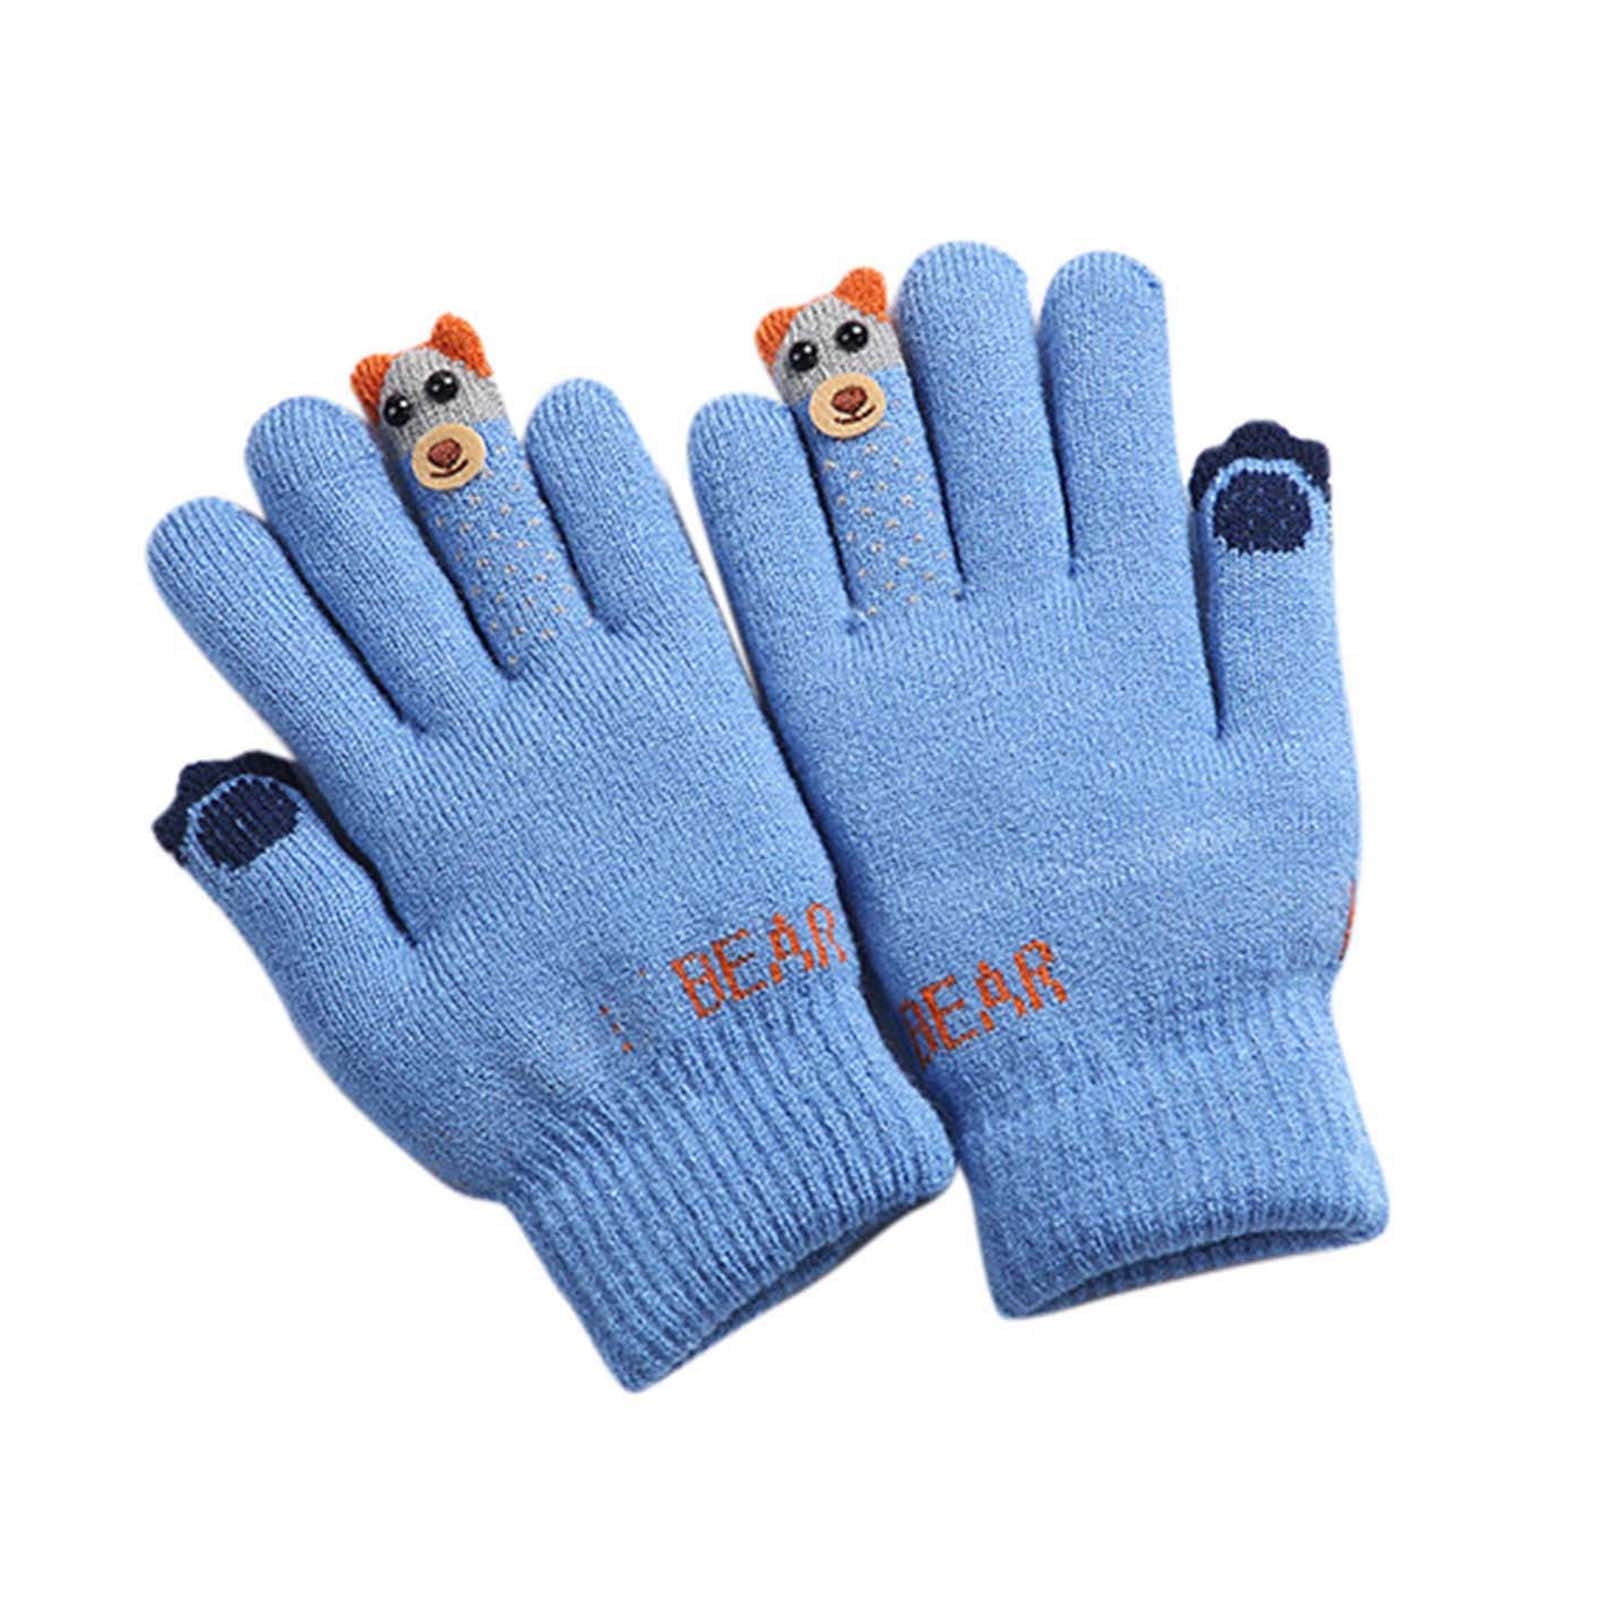 Toddler Boys Girls Warm Knitting Gloves Kids Mittens Winter Full Finger Gloves 